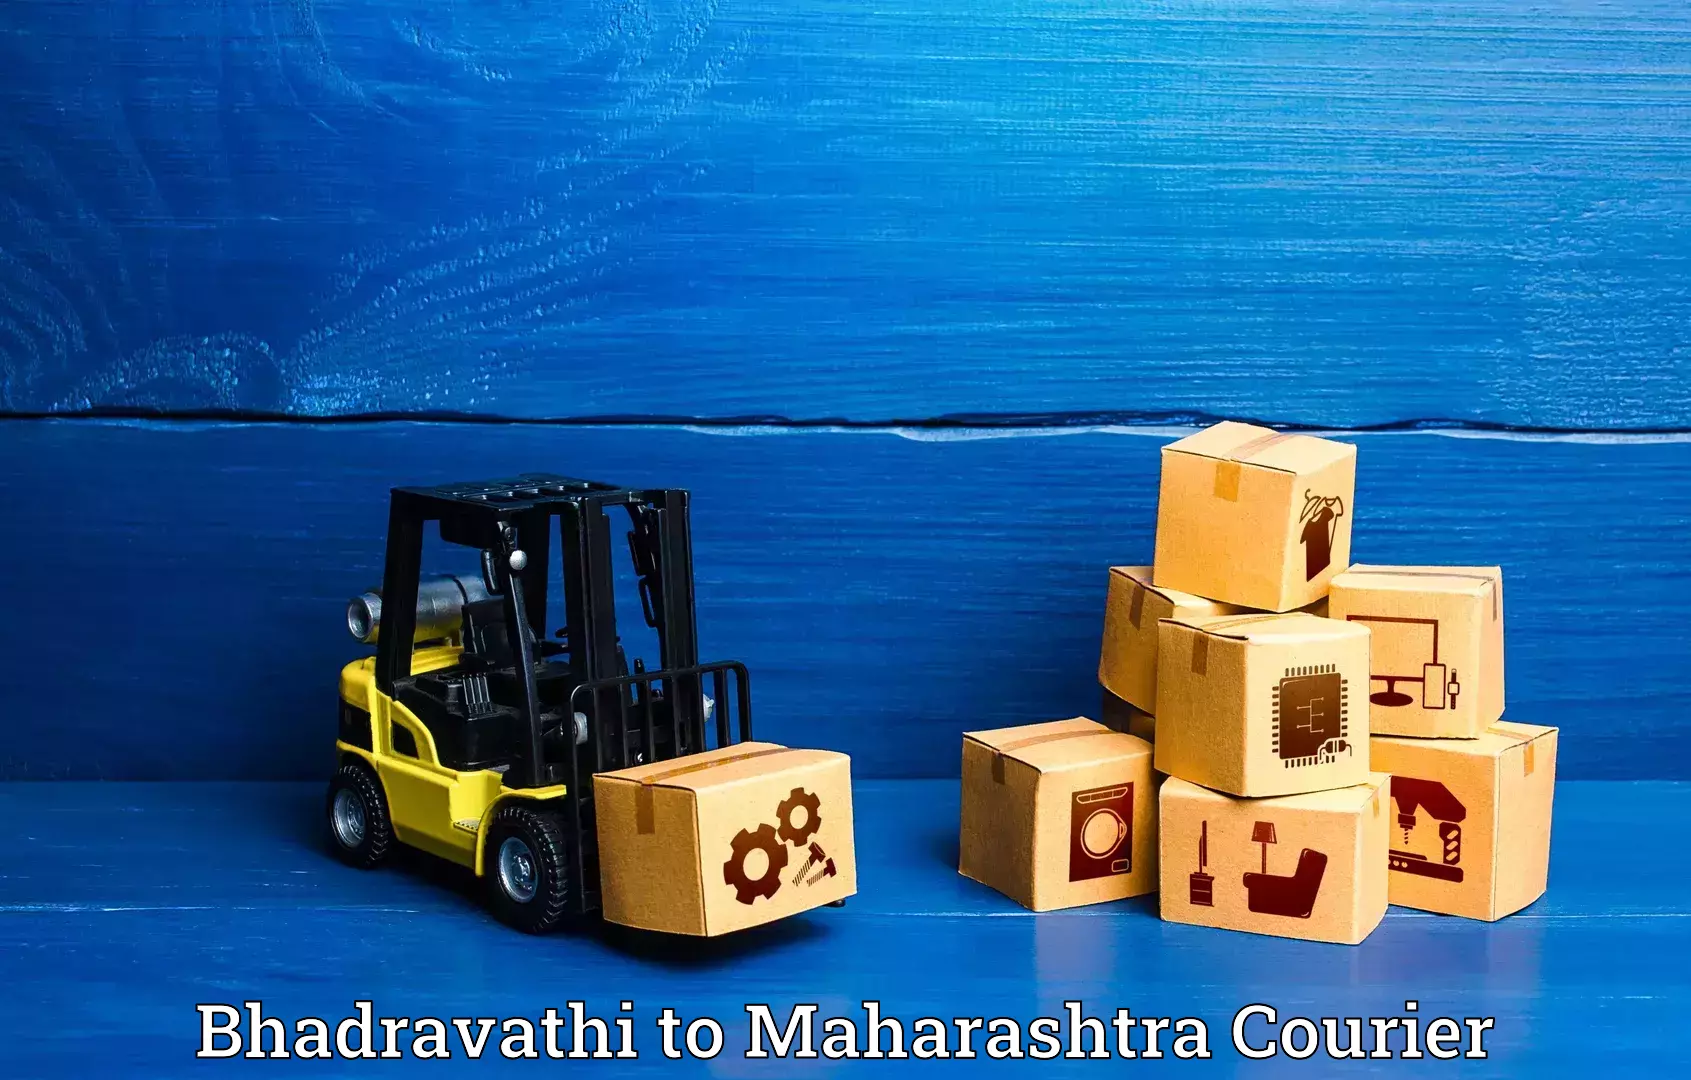 Luggage shipment specialists Bhadravathi to Mumbai Port